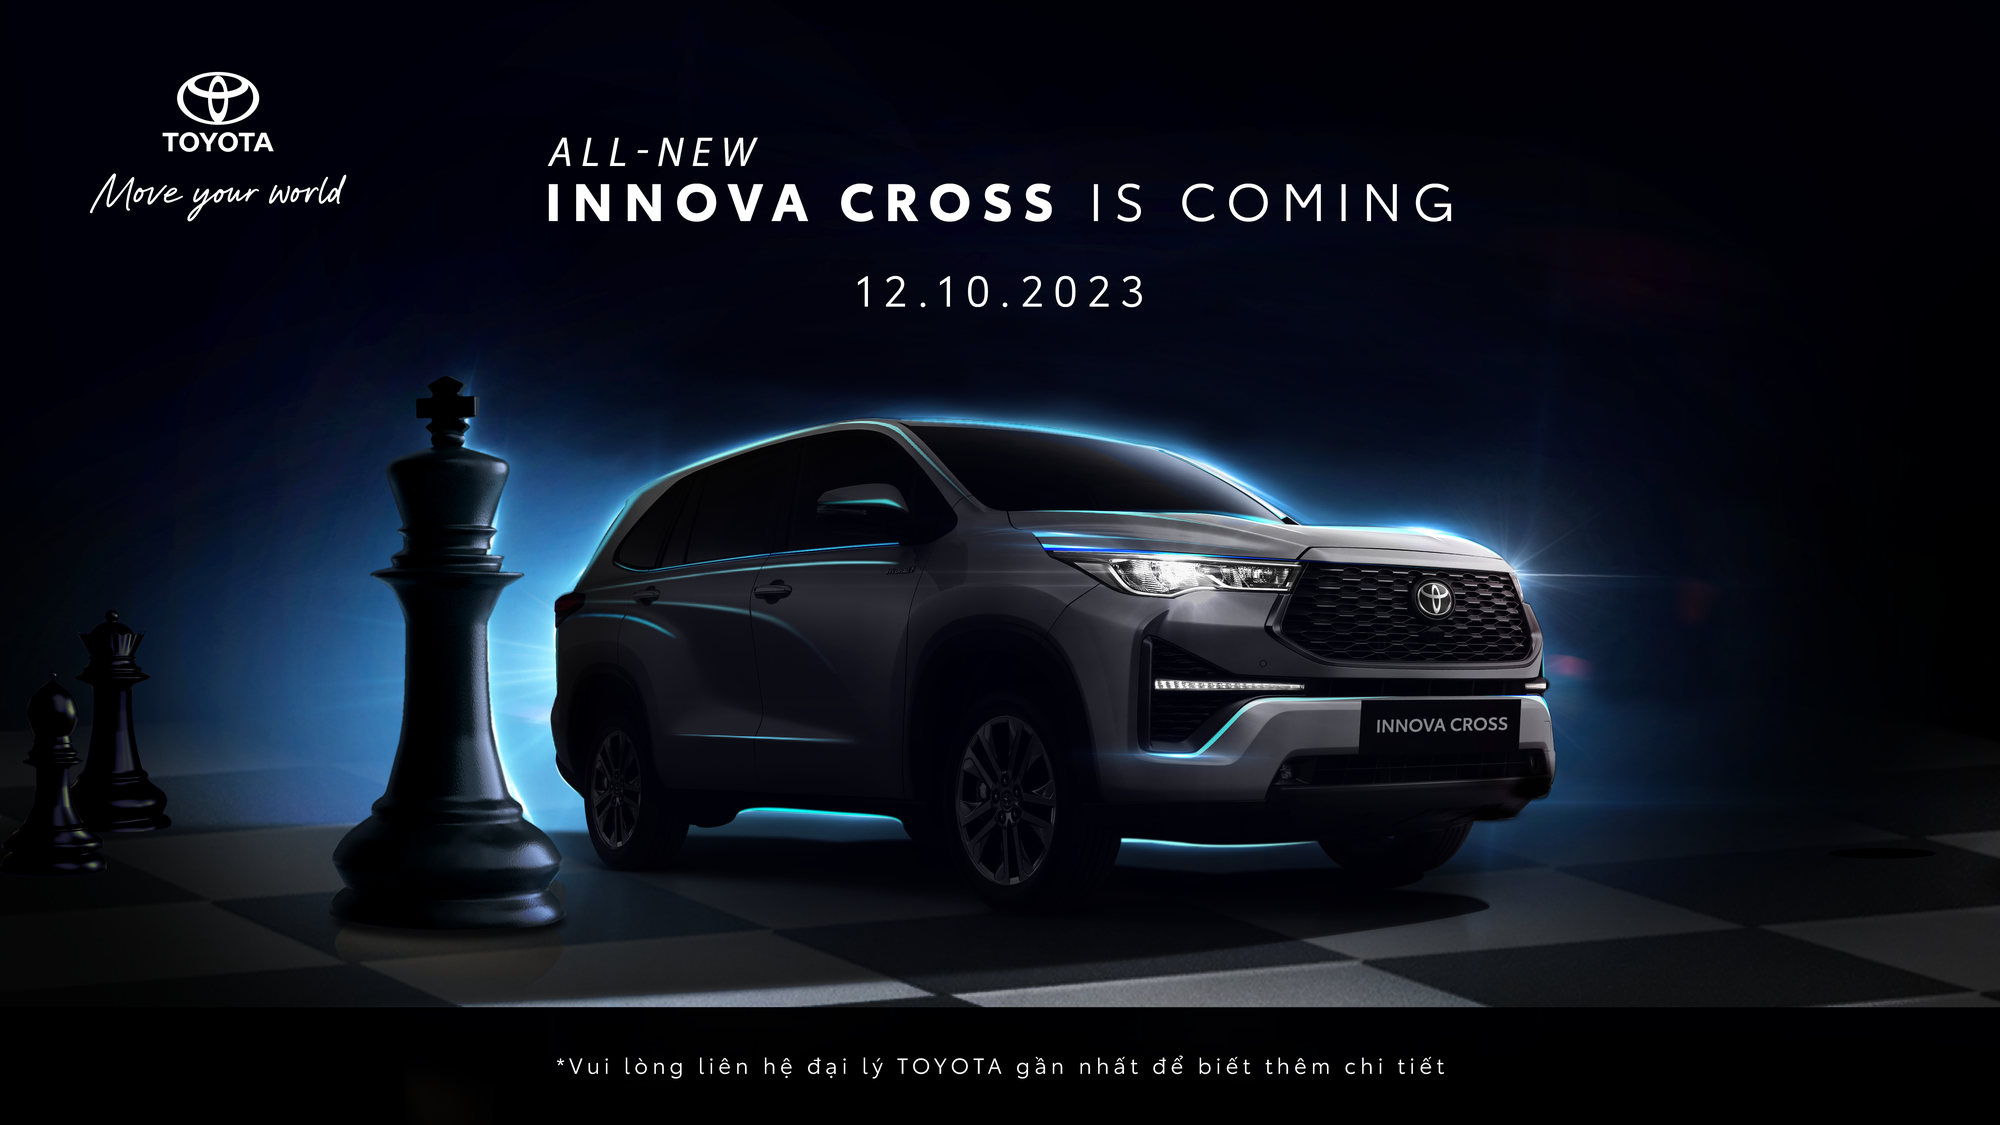 Chốt ngày ra mắt Toyota Innova Cross tại Việt Nam, đại lý nhận cọc đã có giá dự kiến  - Ảnh 1.